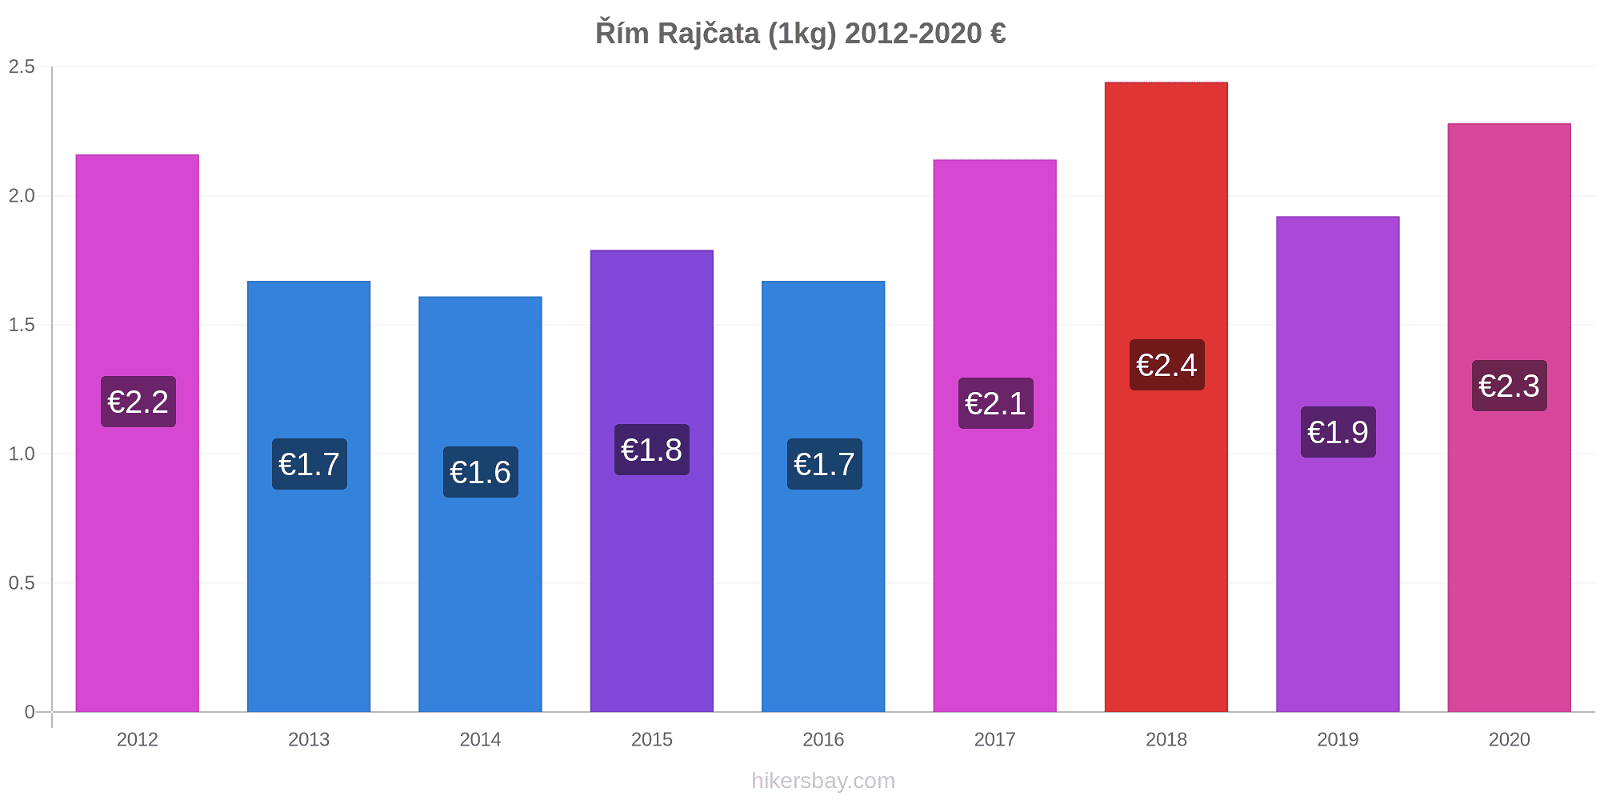 Řím změny cen Rajčata (1kg) hikersbay.com